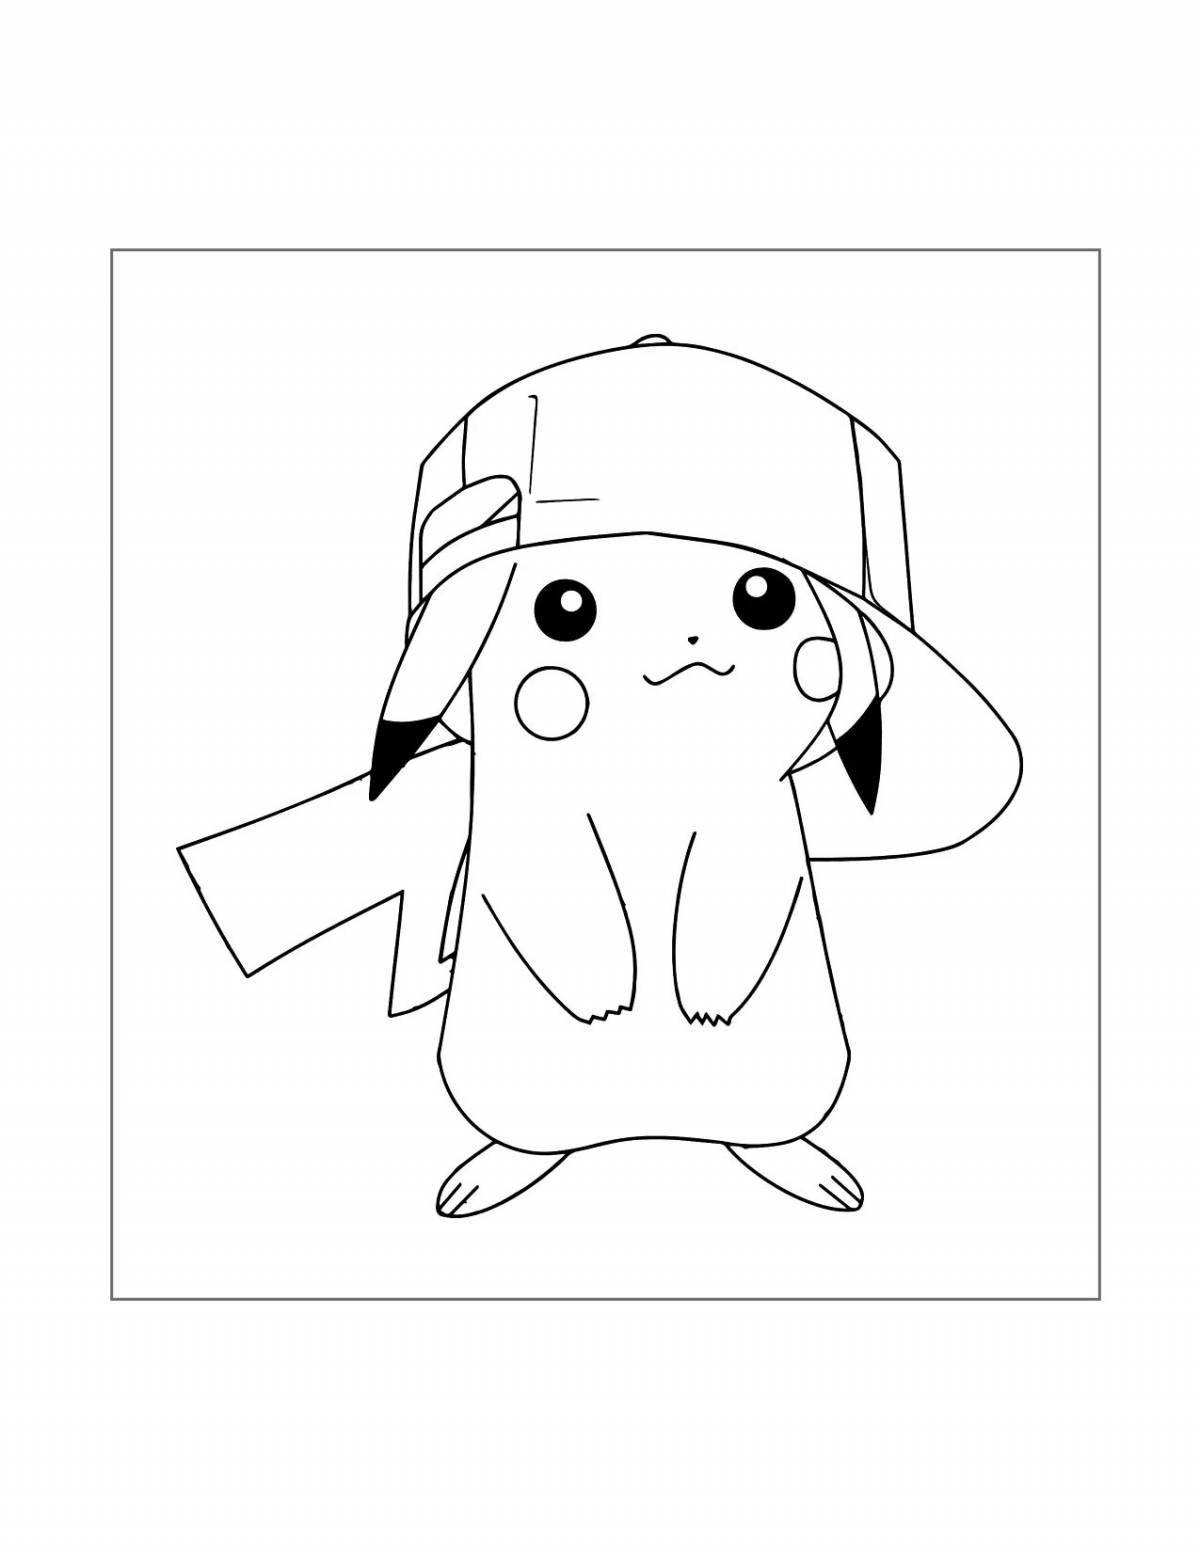 Fun coloring girl in pikachu costume